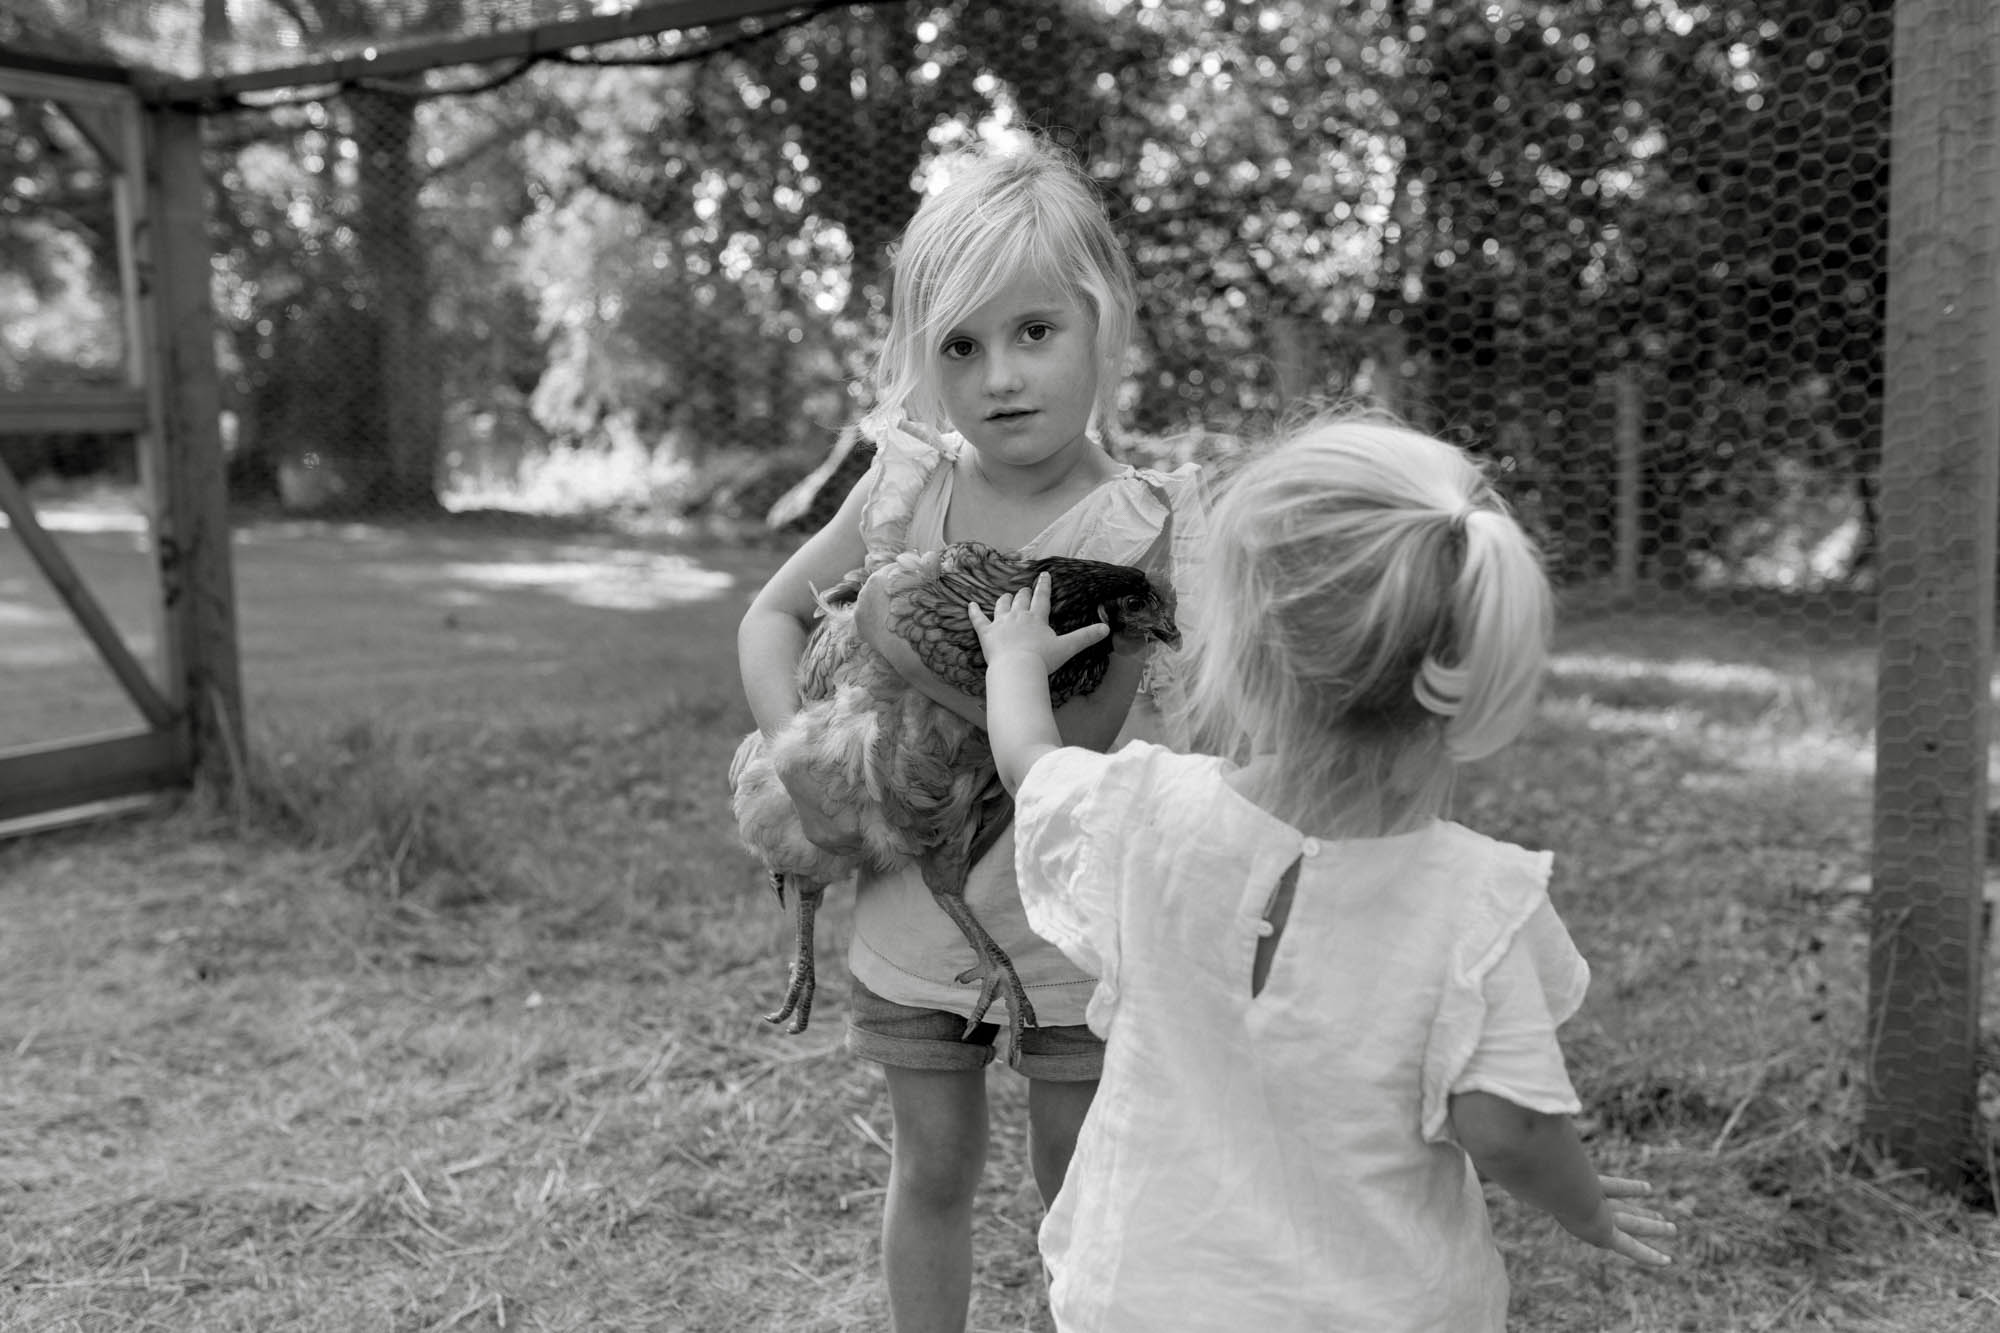 Family farm portrait photography in b&w